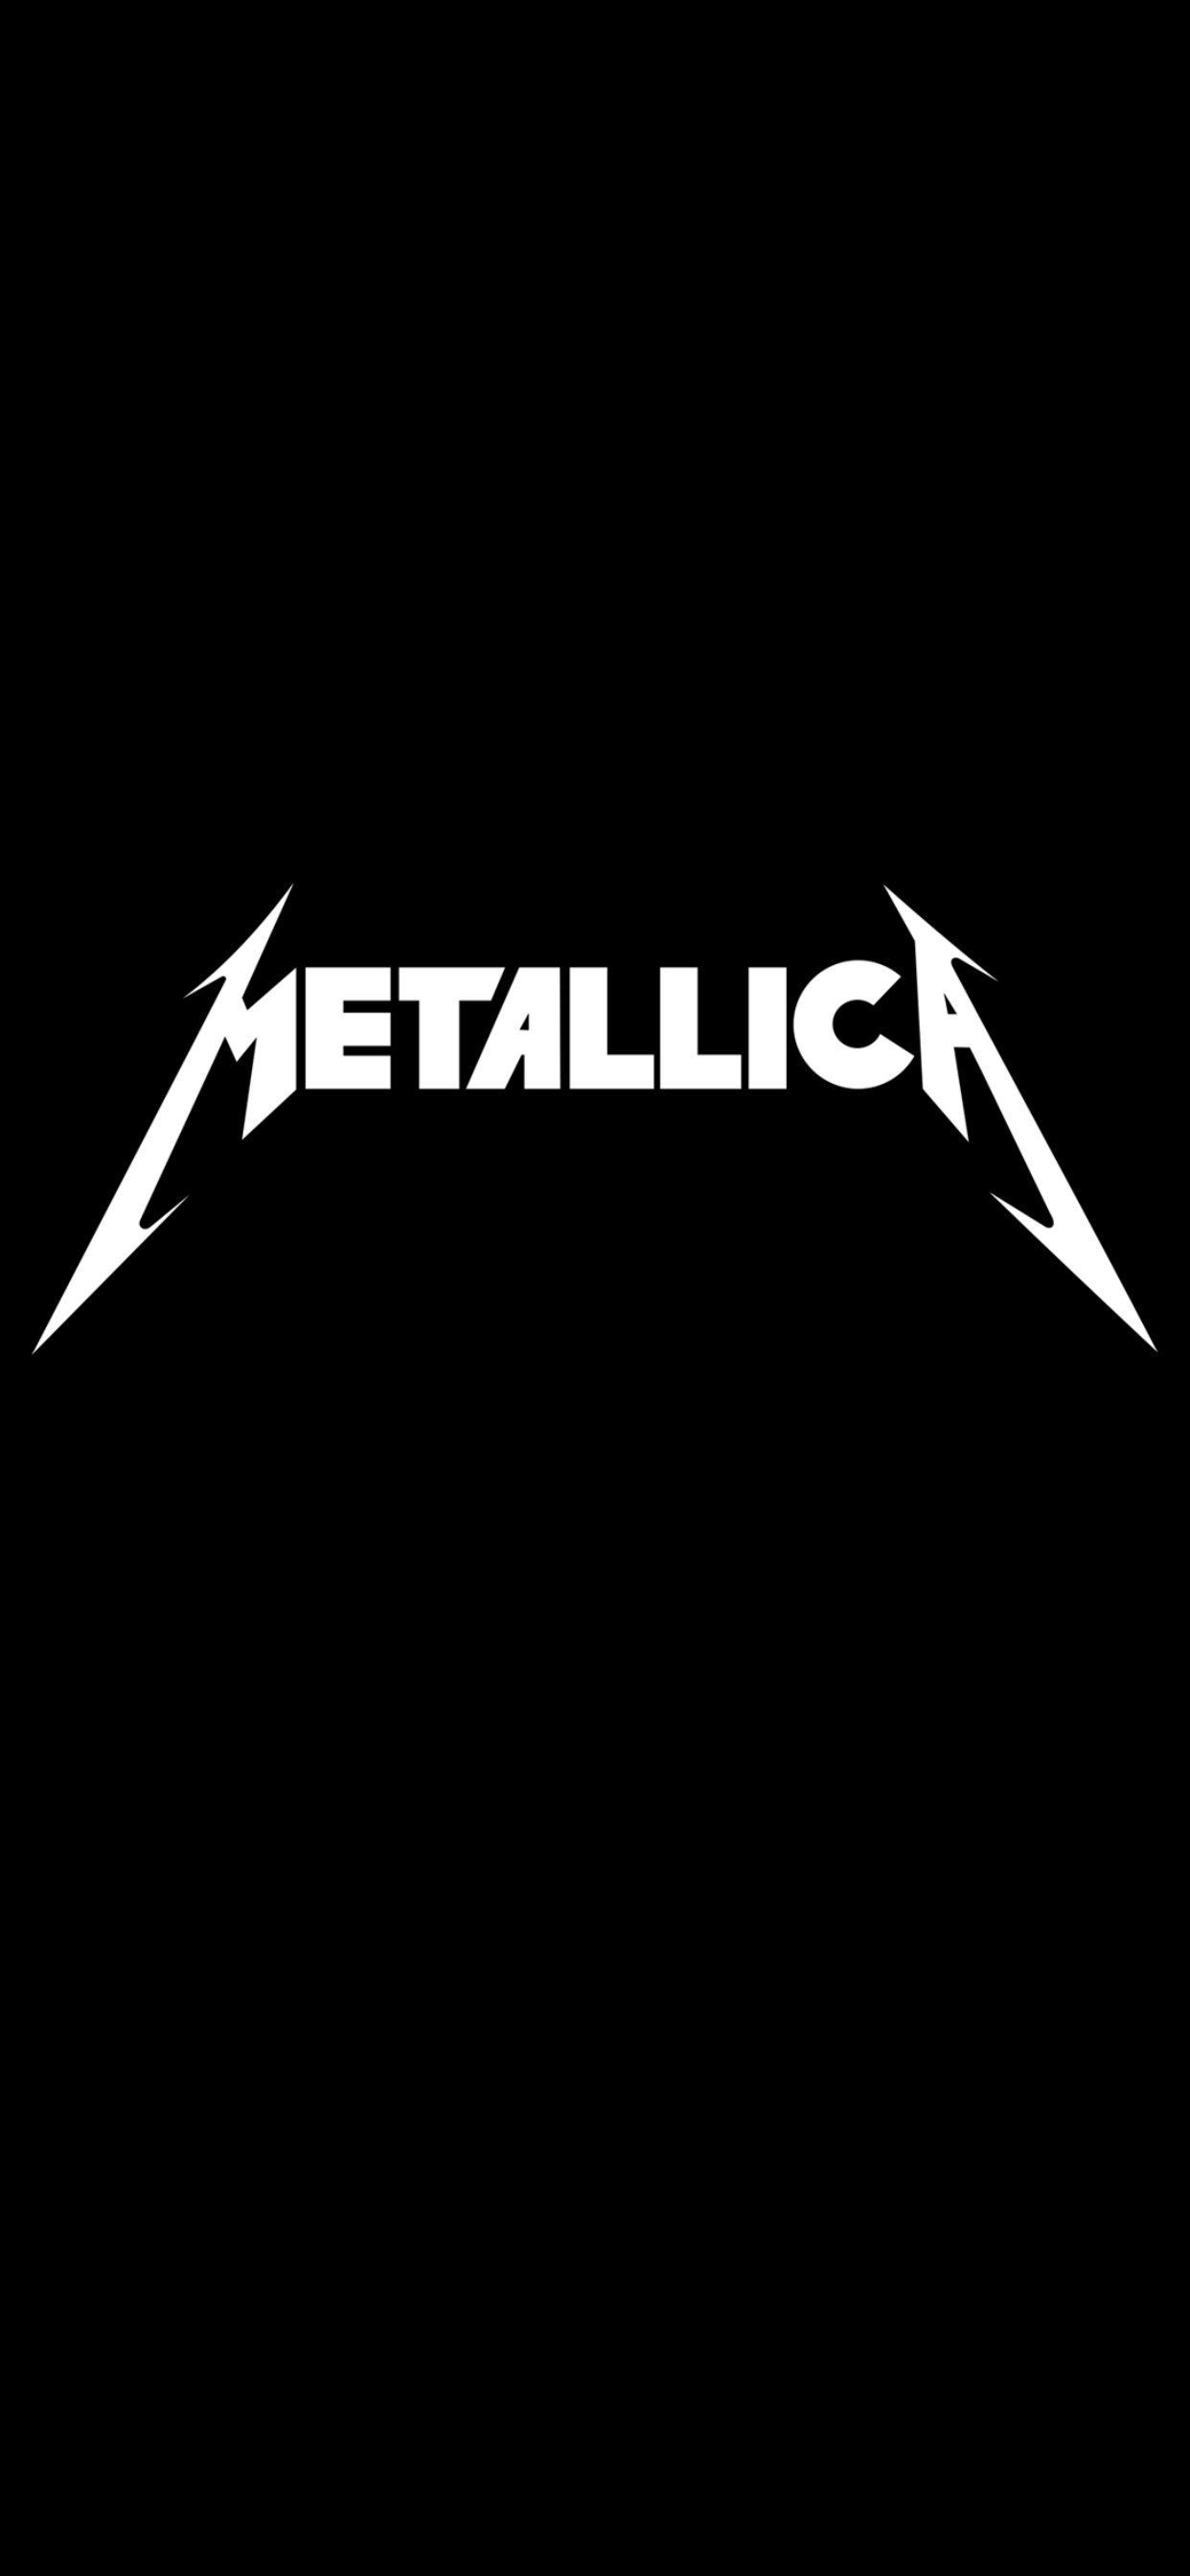 Metallica iPhone HD phone wallpaper  Pxfuel